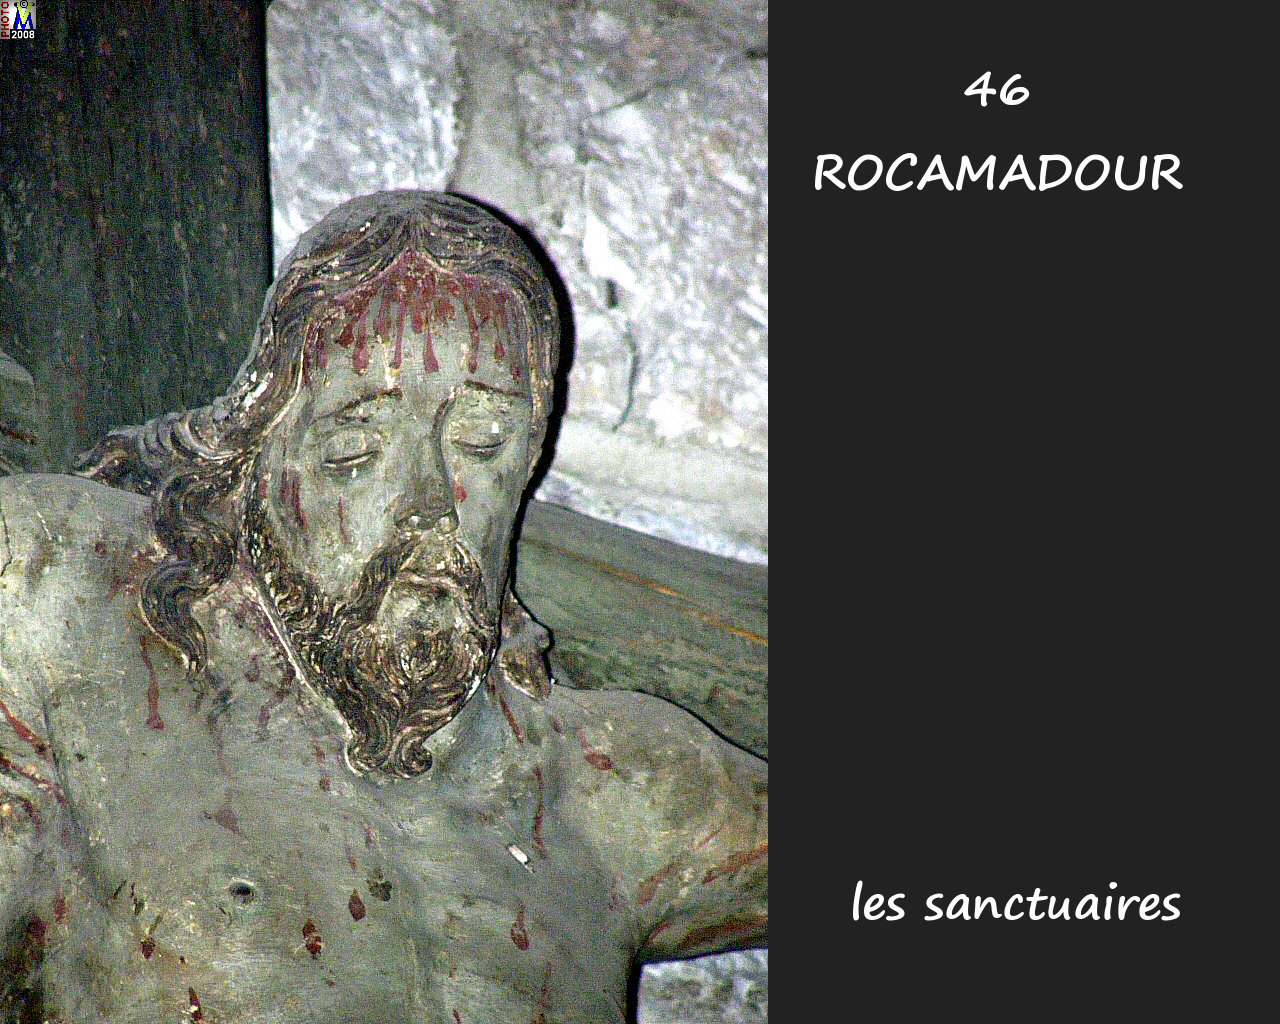 46ROCAMADOUR_sanctuaires_754.jpg